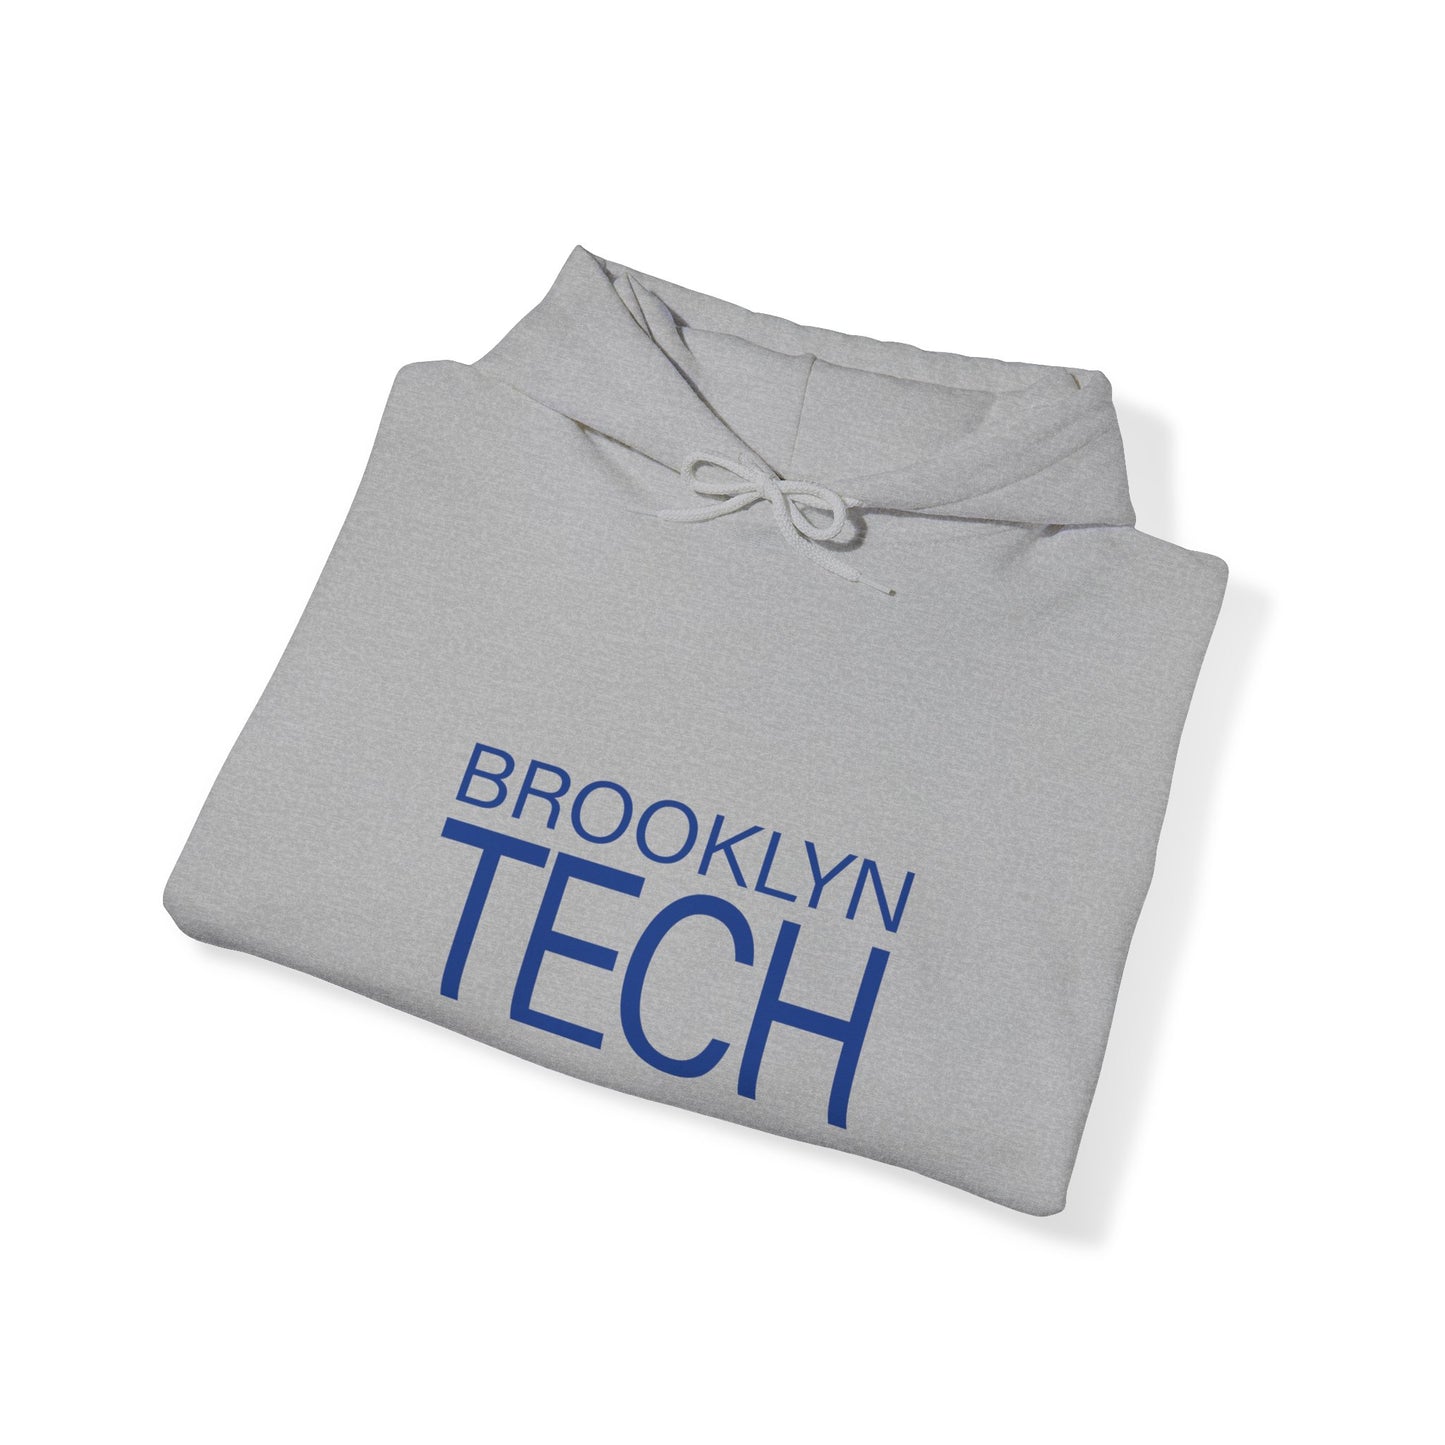 Modern Brooklyn Tech - Men's Heavy Blend Hooded Sweatshirt